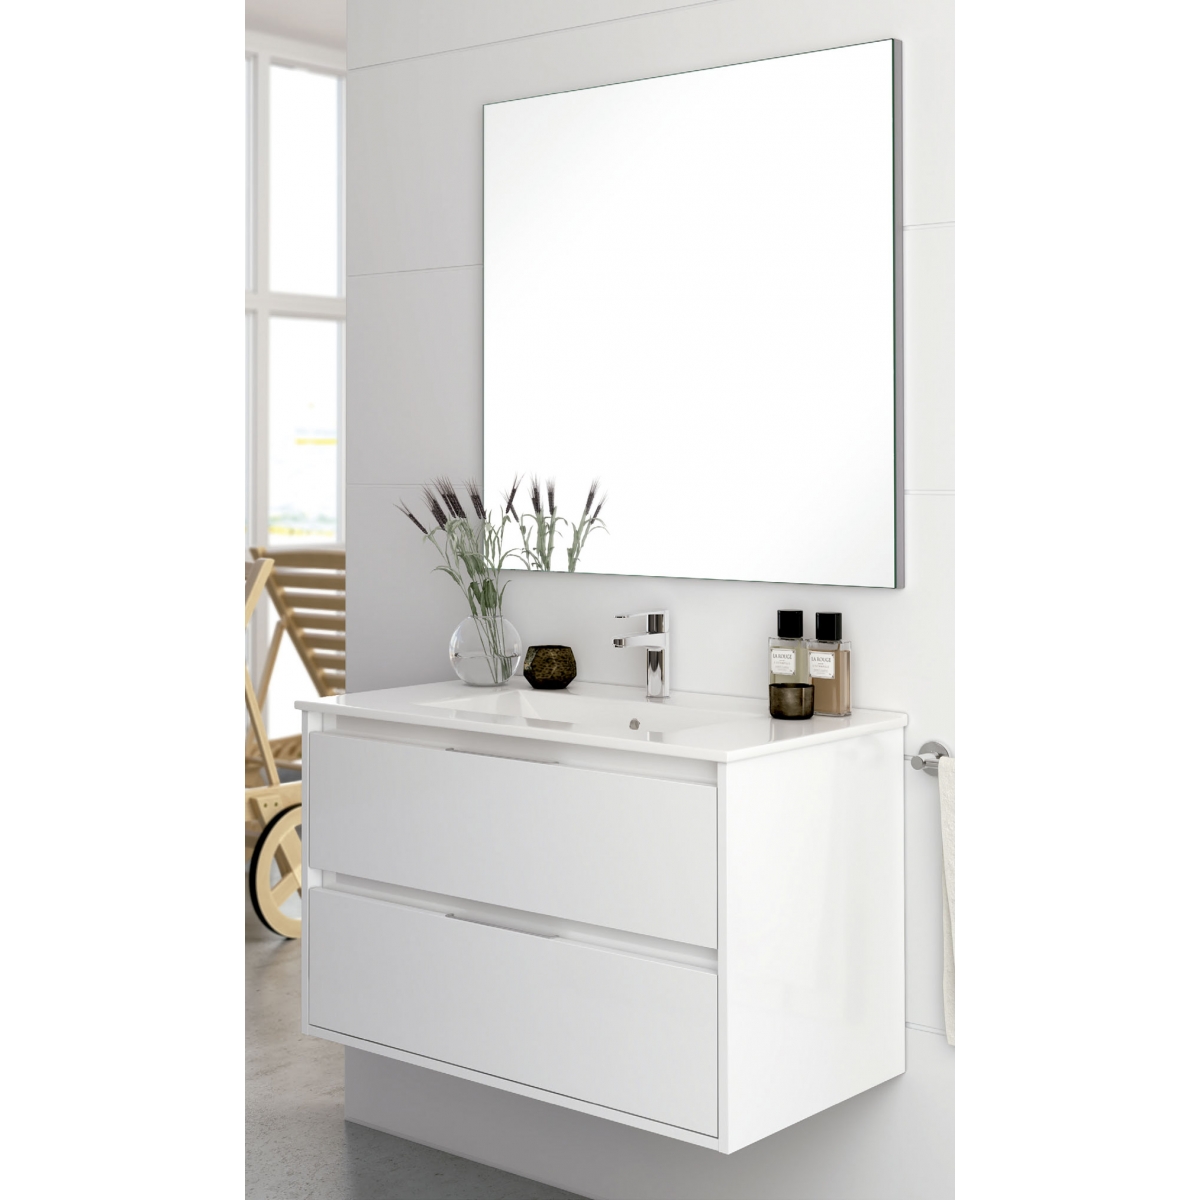 Mueble de baño suspendido Dundee color Blanco Lacado de 70 cm - Comprar  online al mejor precio.